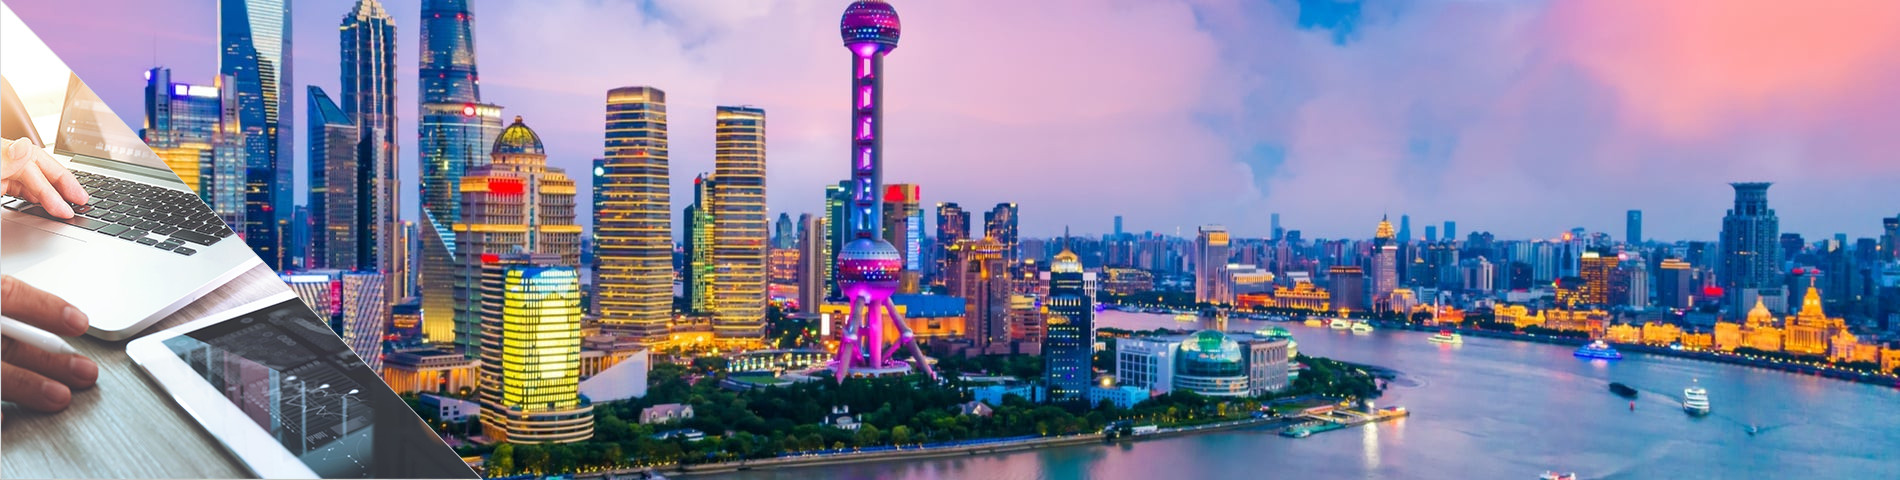 Shanghai - Xinès i Mitjans digitals